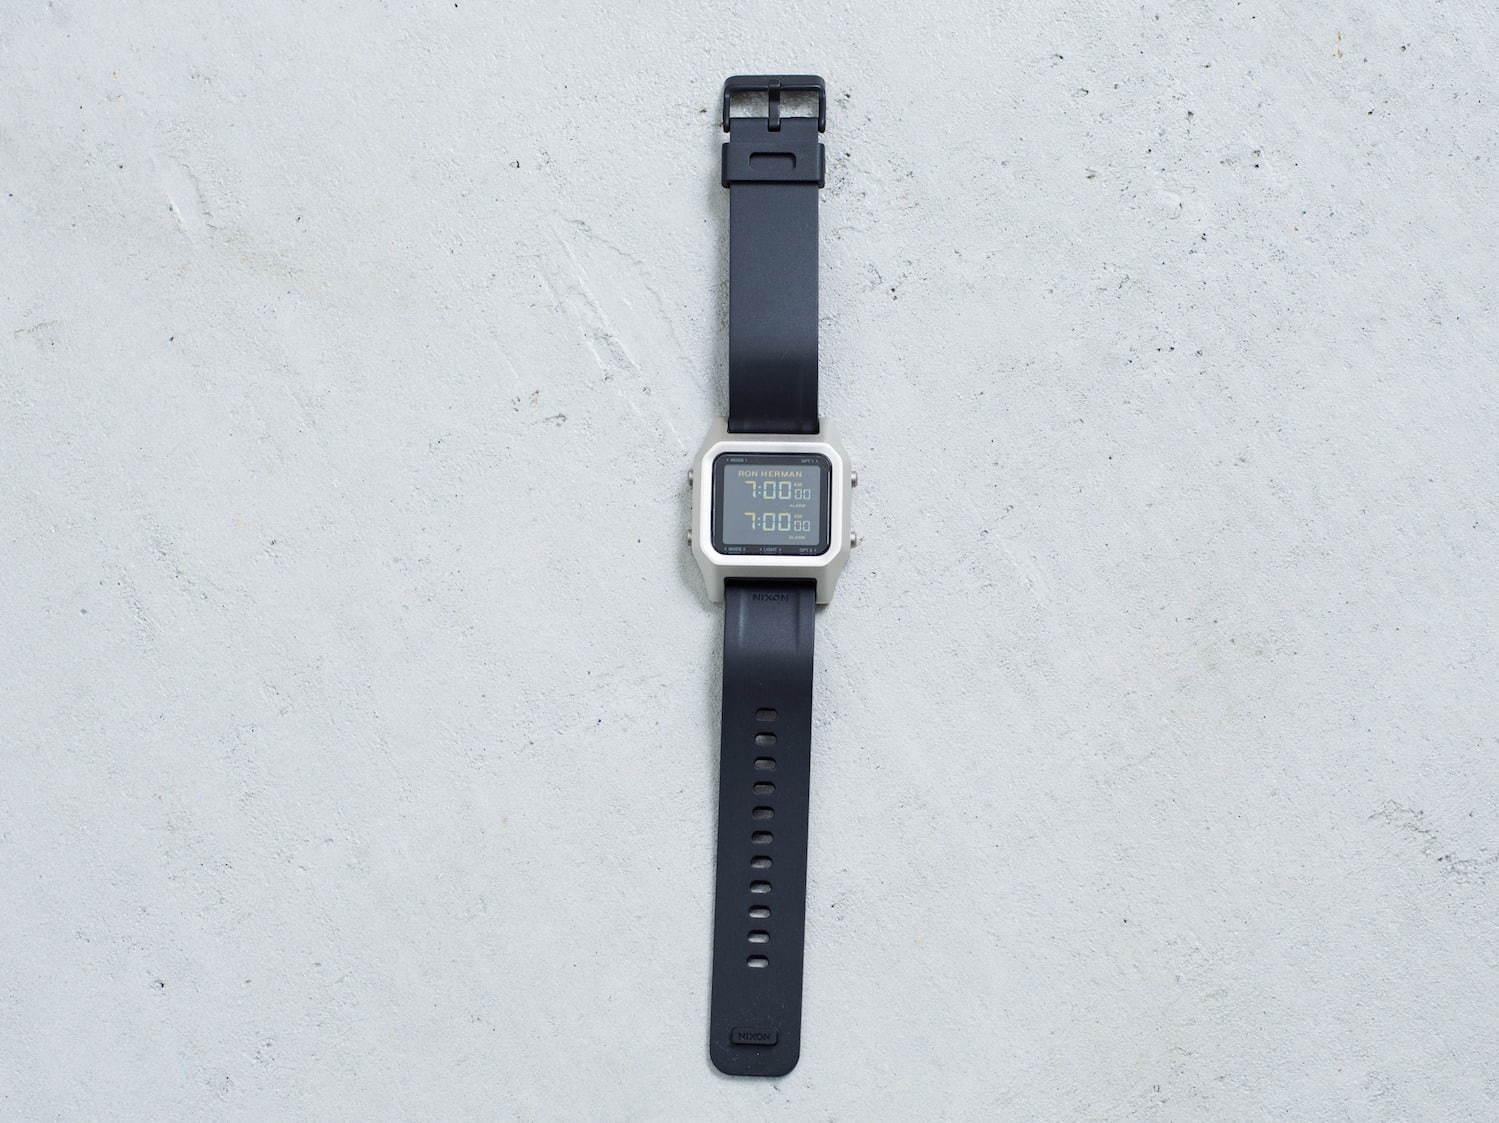 ニクソン×RHC ロンハーマンの新作腕時計、シルバーの超薄型ケース&カスタマイズ可能な液晶画面 コピー